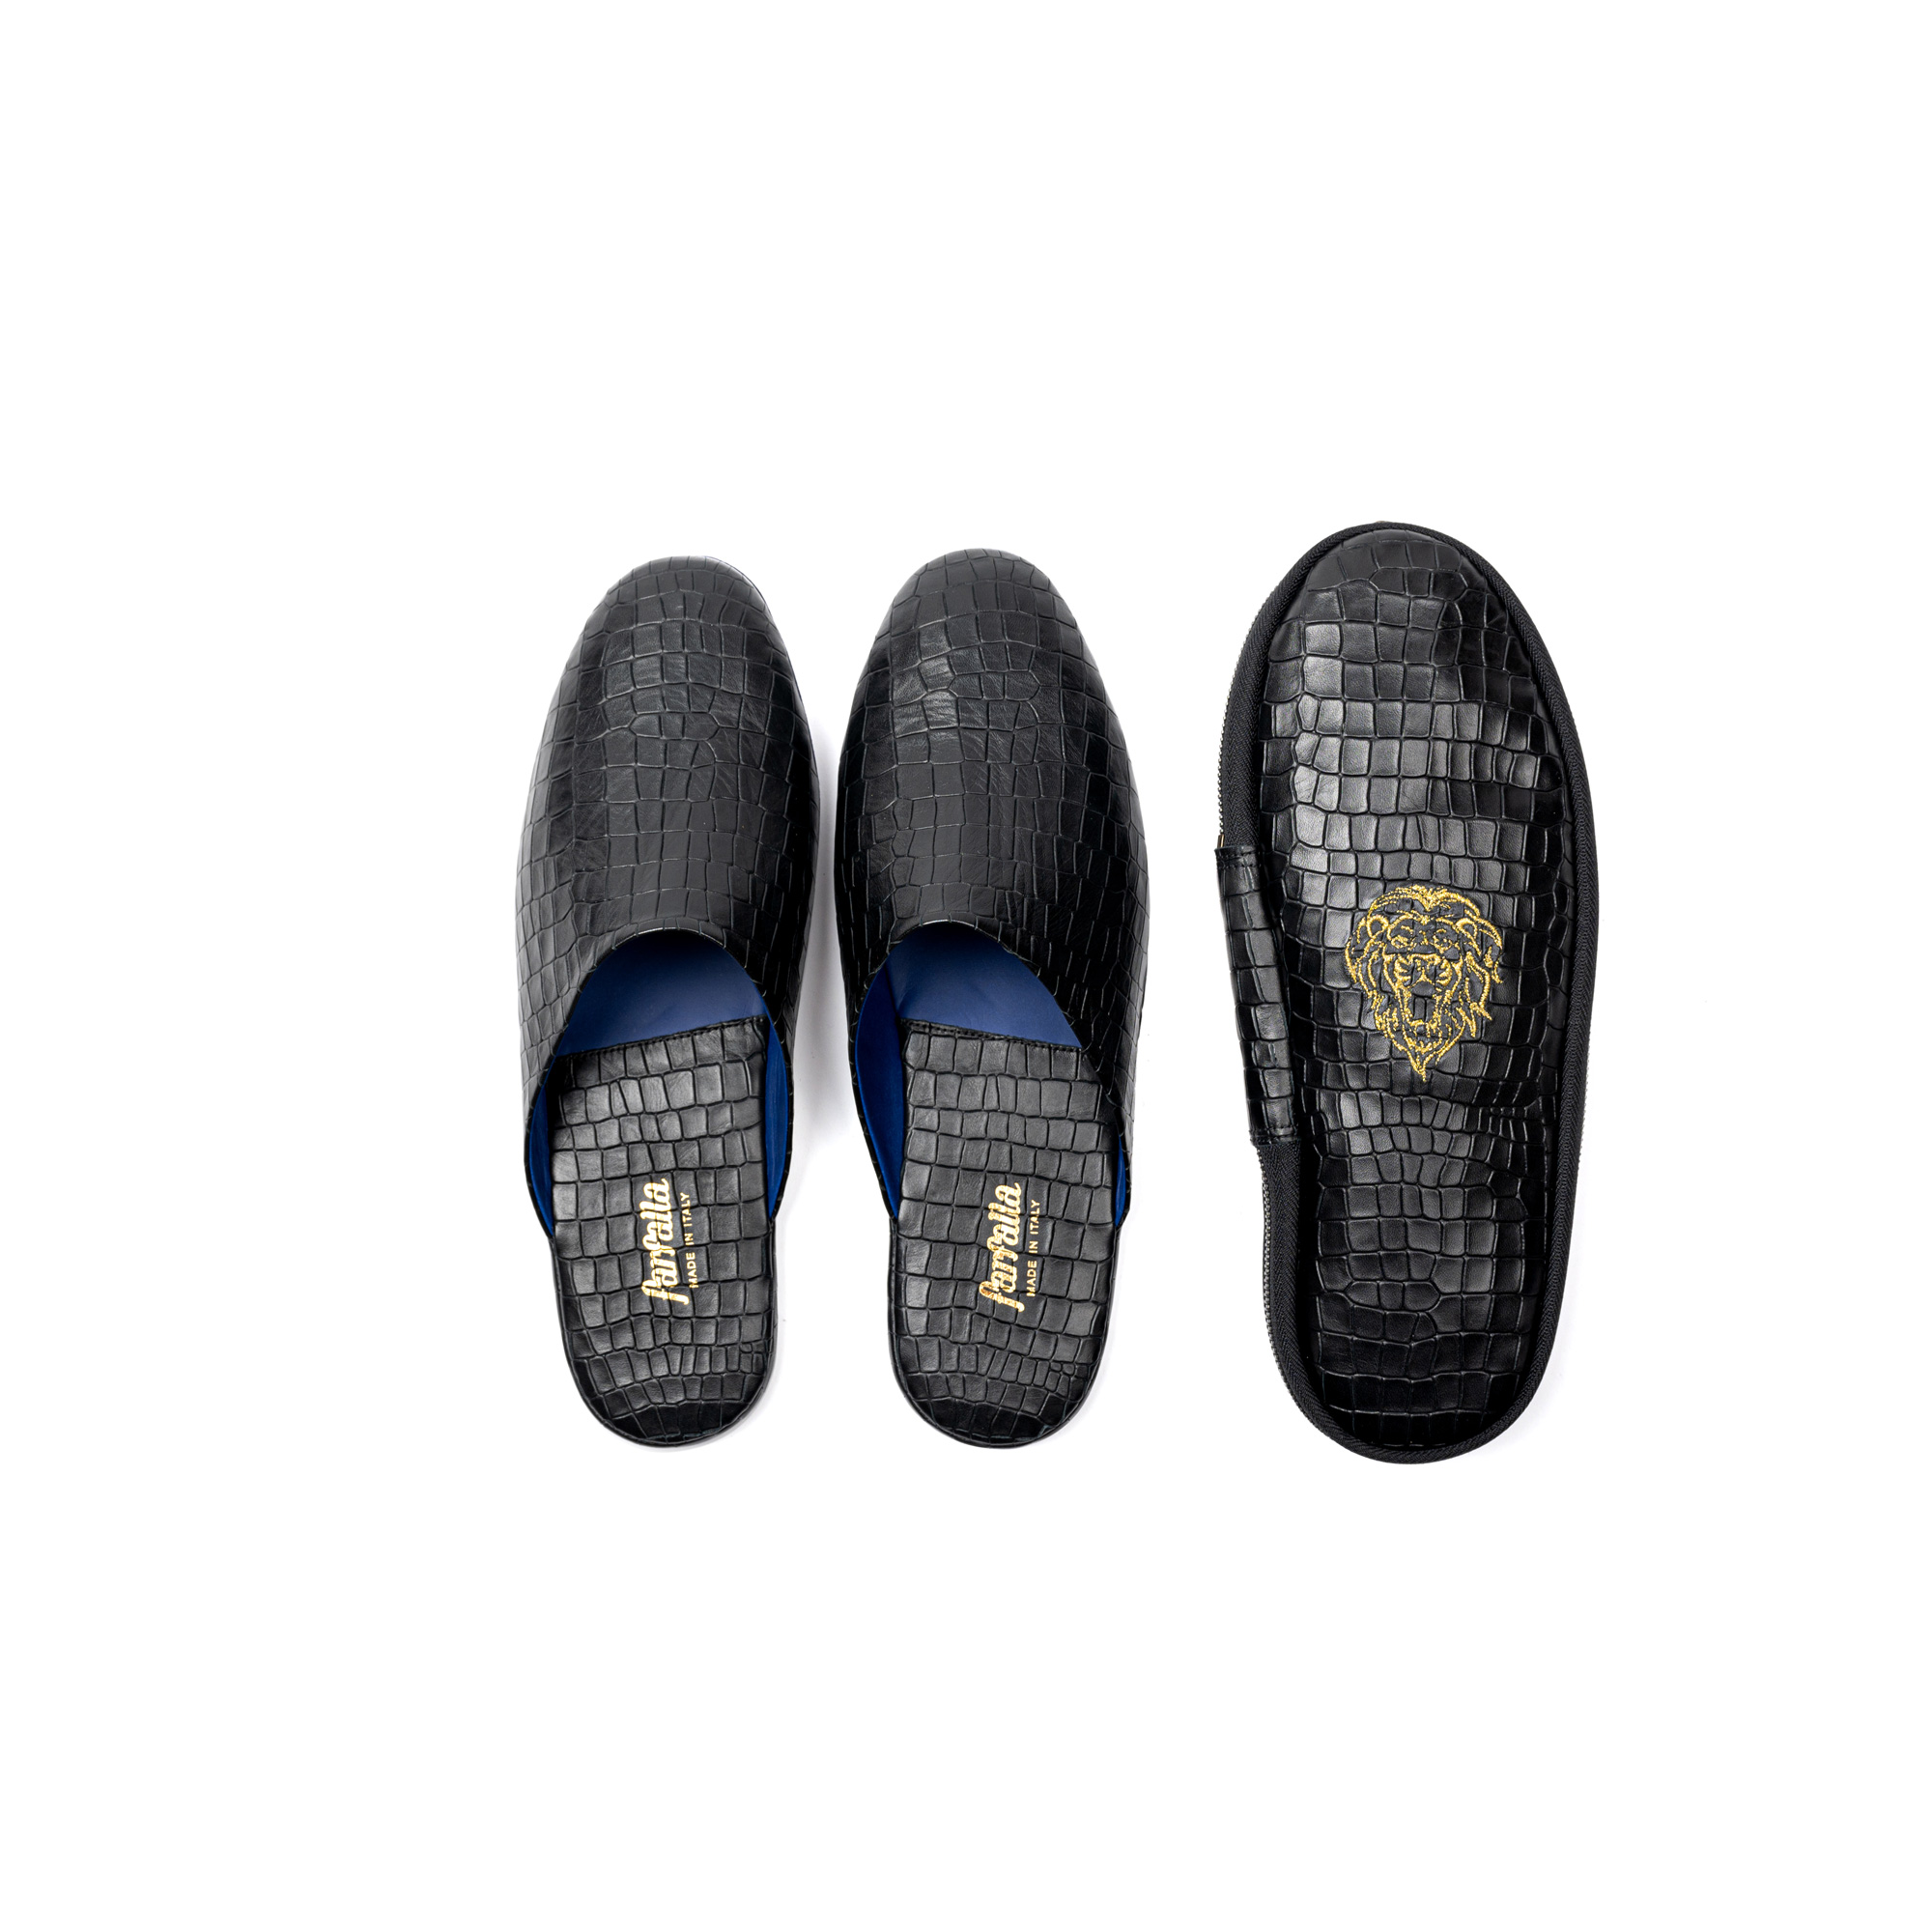 Pantofola interno viaggio in pelle stampato cocco - Farfalla italian slippers